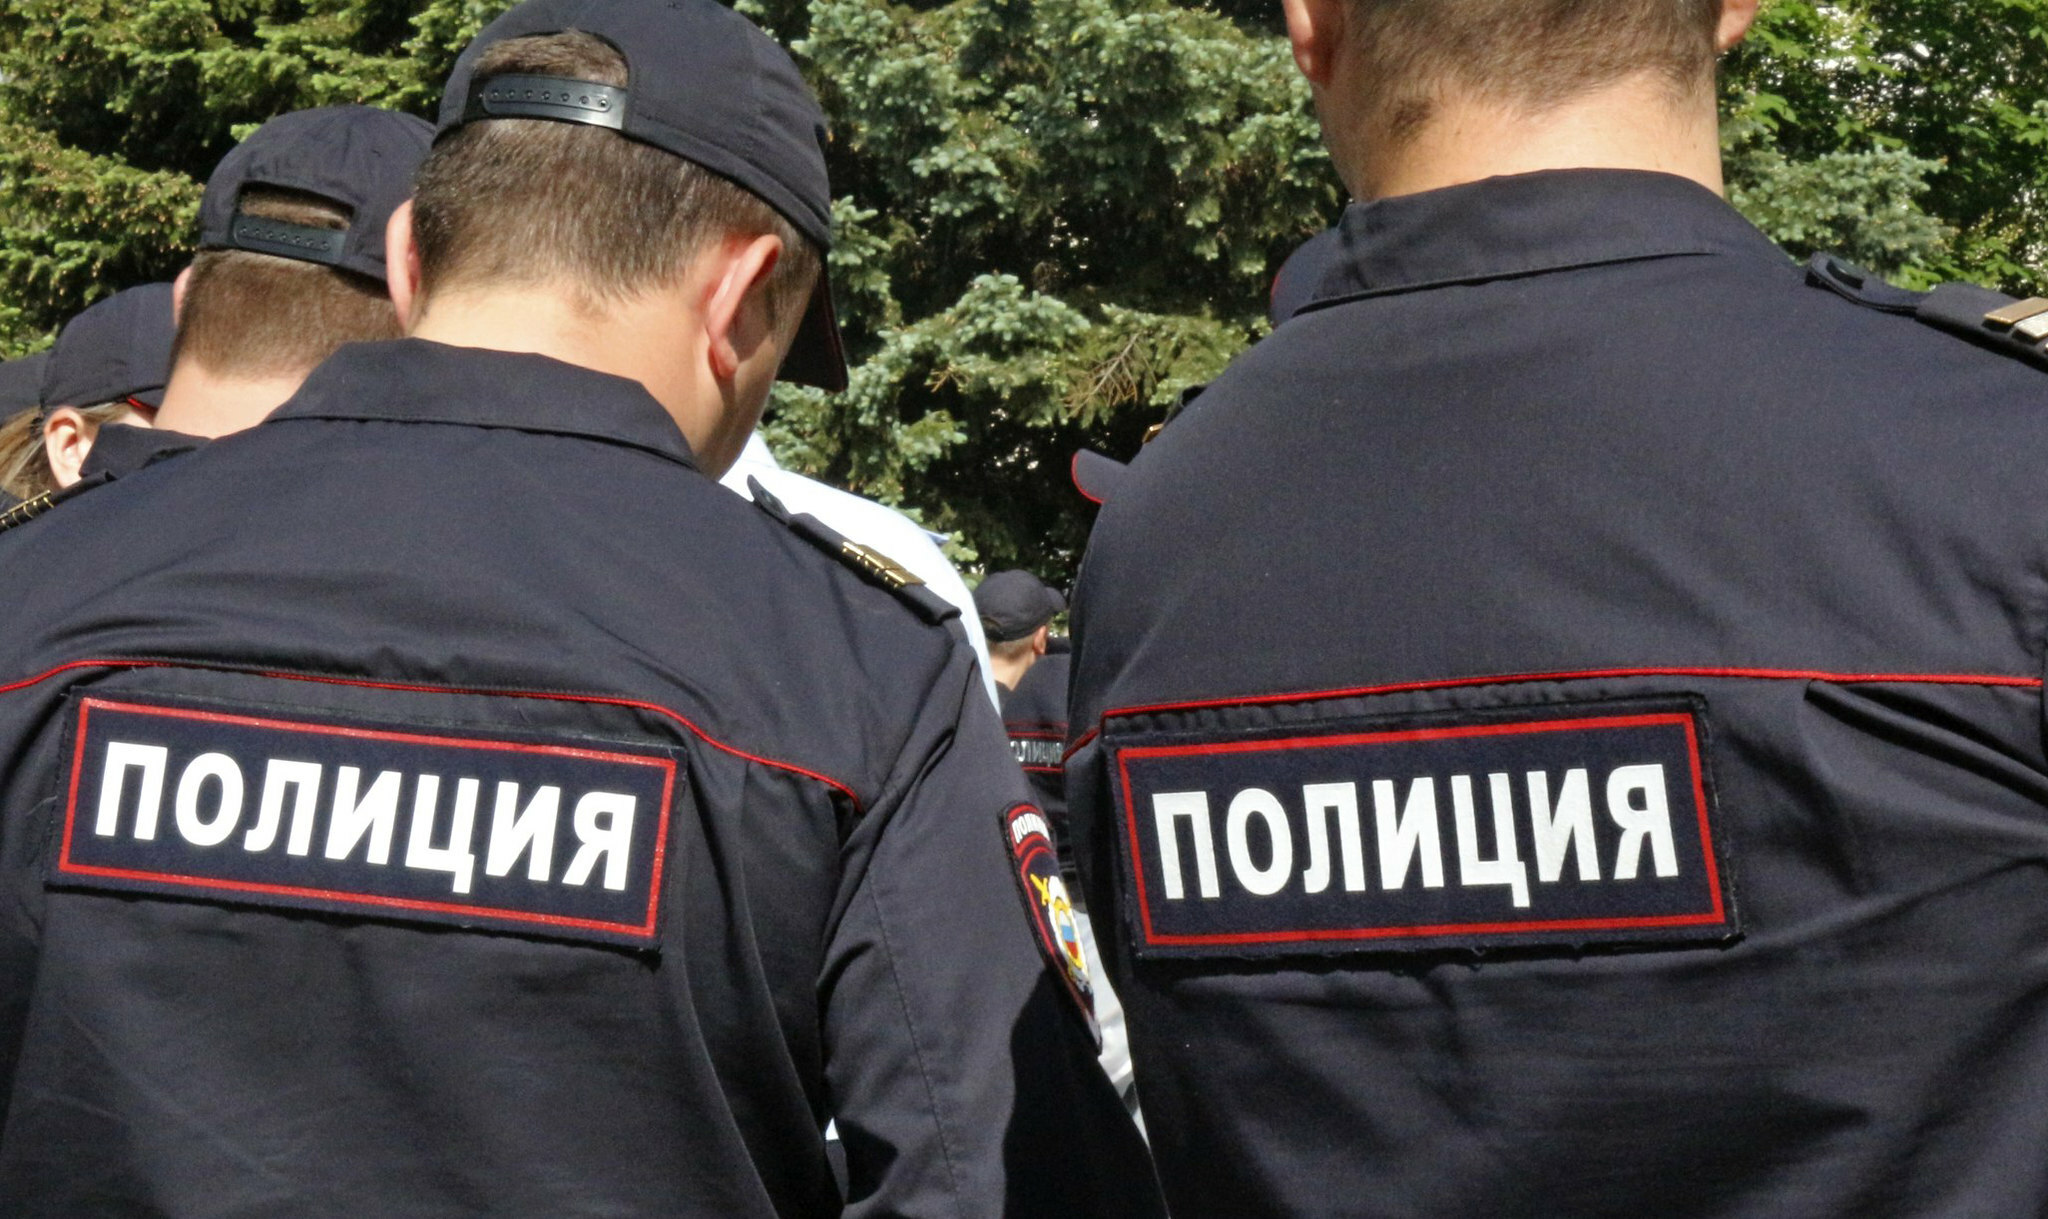 МВД России объявило в розыск шпиона Смоленкова